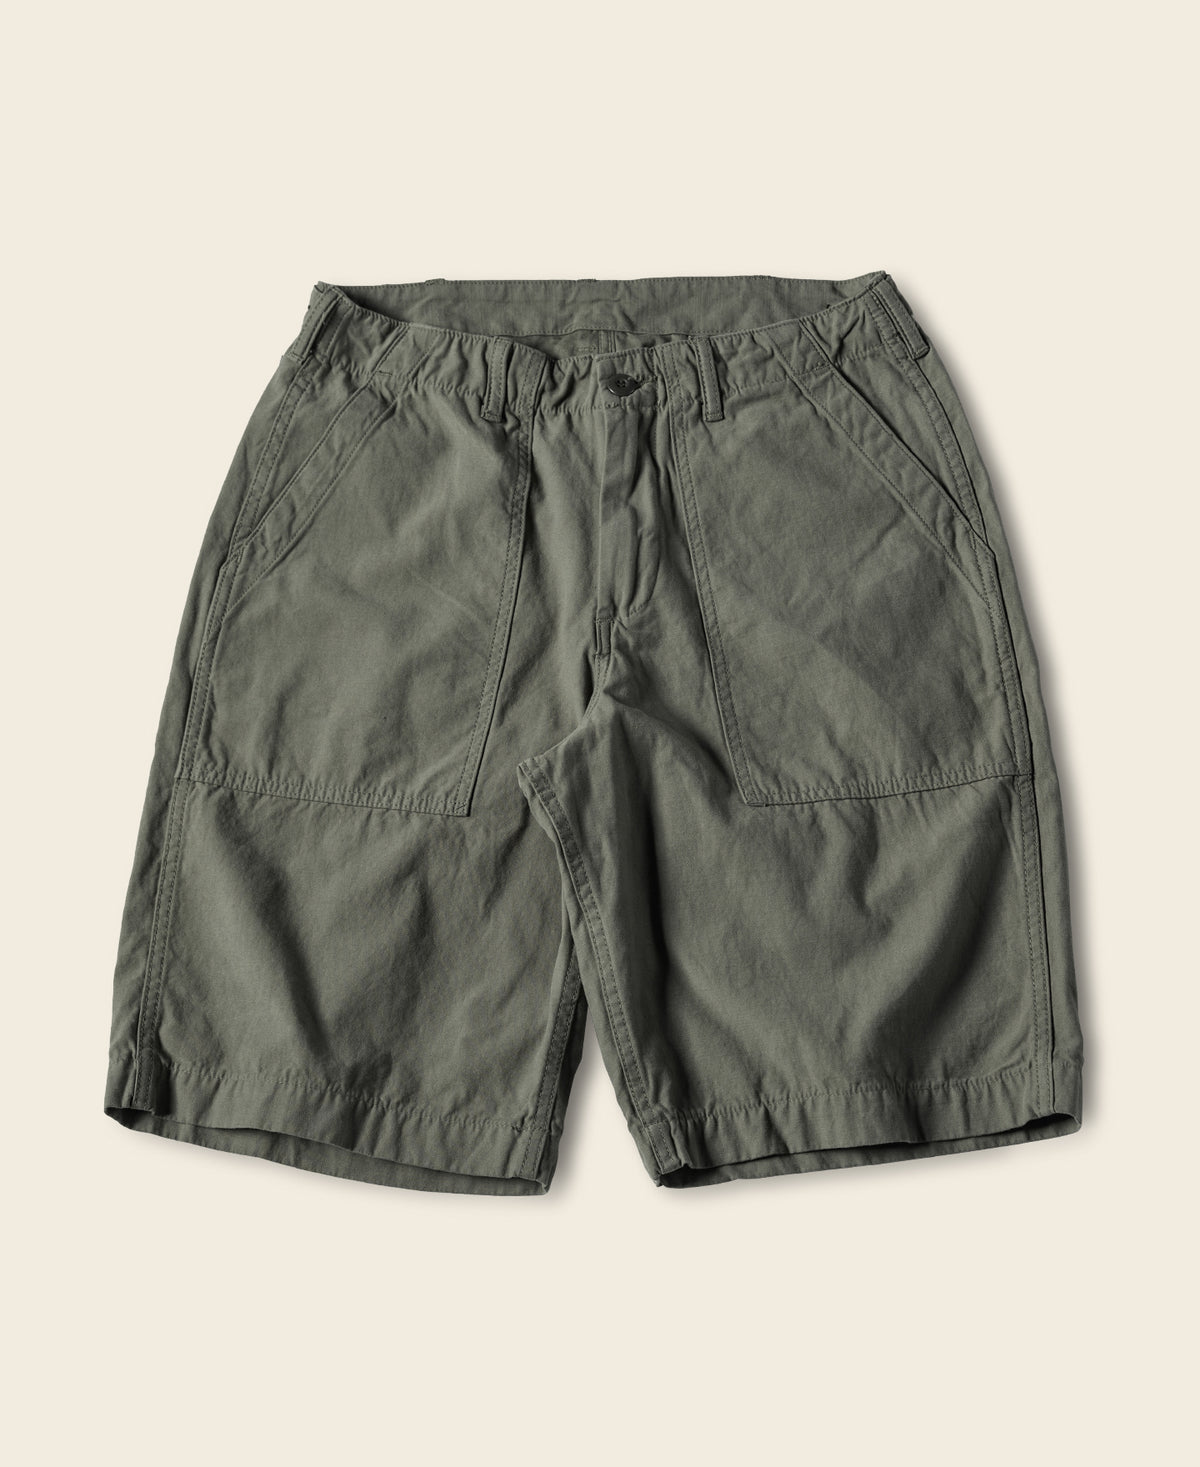 Vietnam War OG107 Fatigue Utility Shorts - Olive